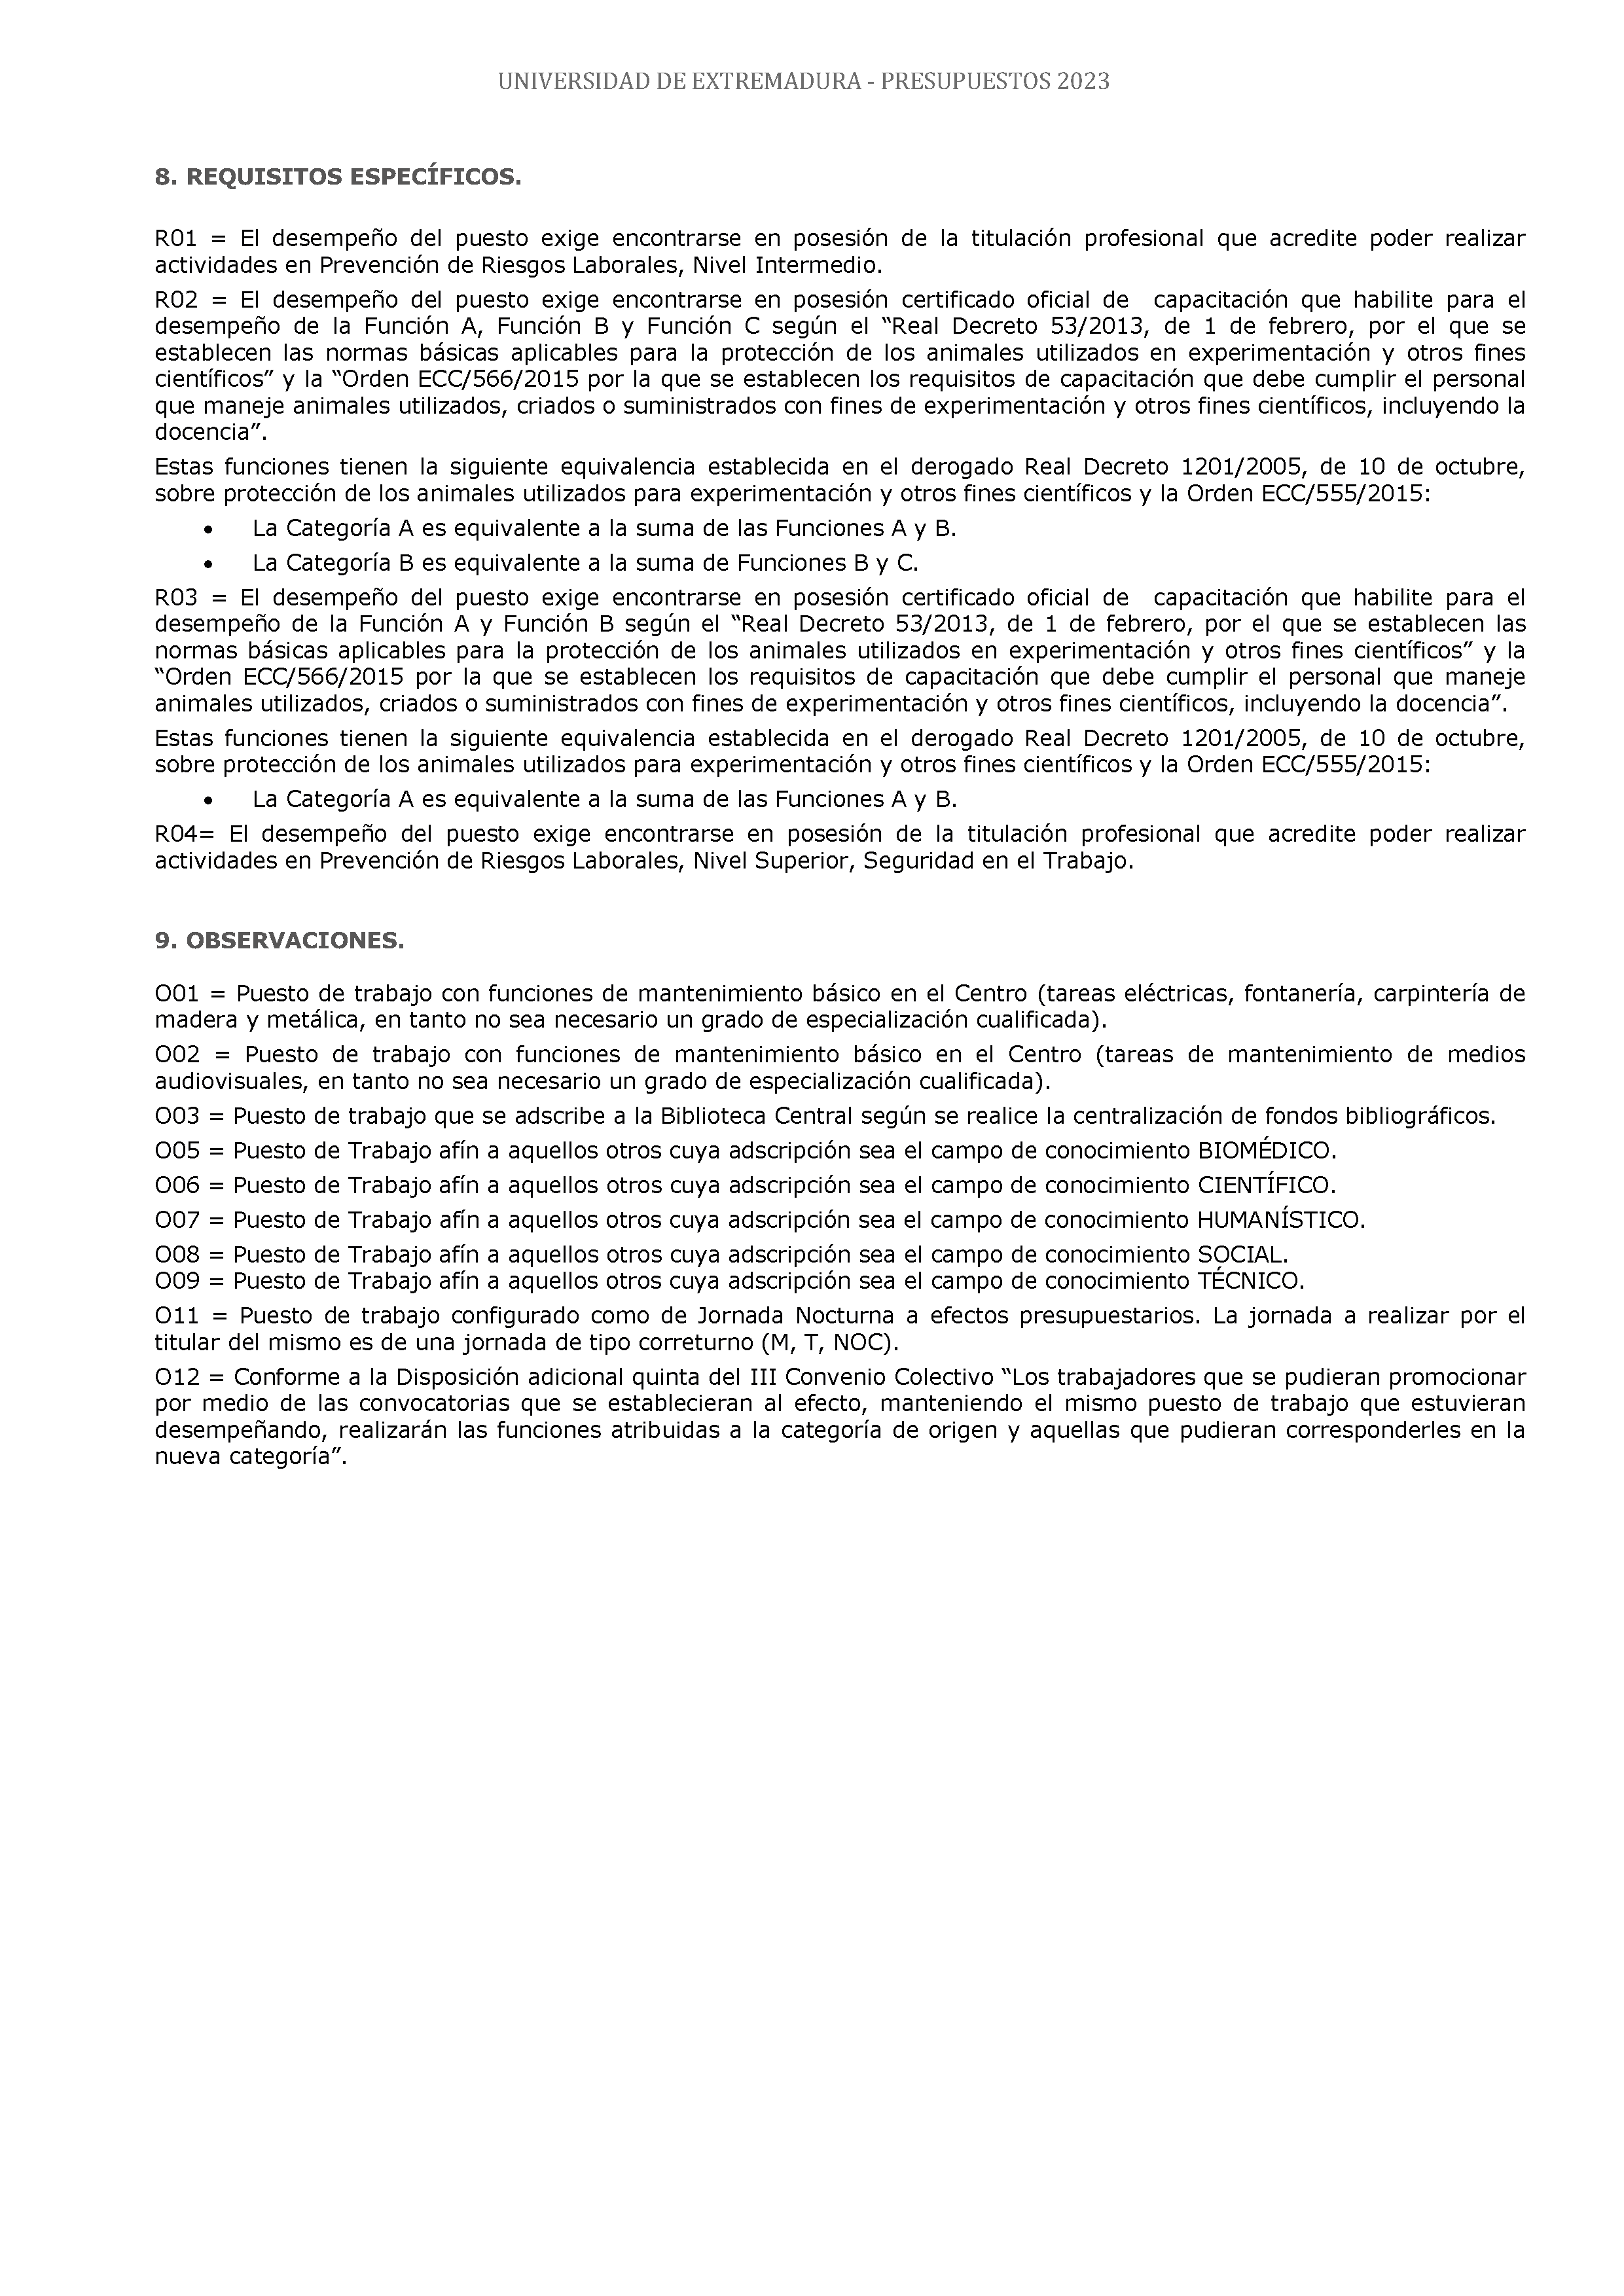 ANEXO - ESTADO NUMERICO DEL PRESUPUESTO Pag 142